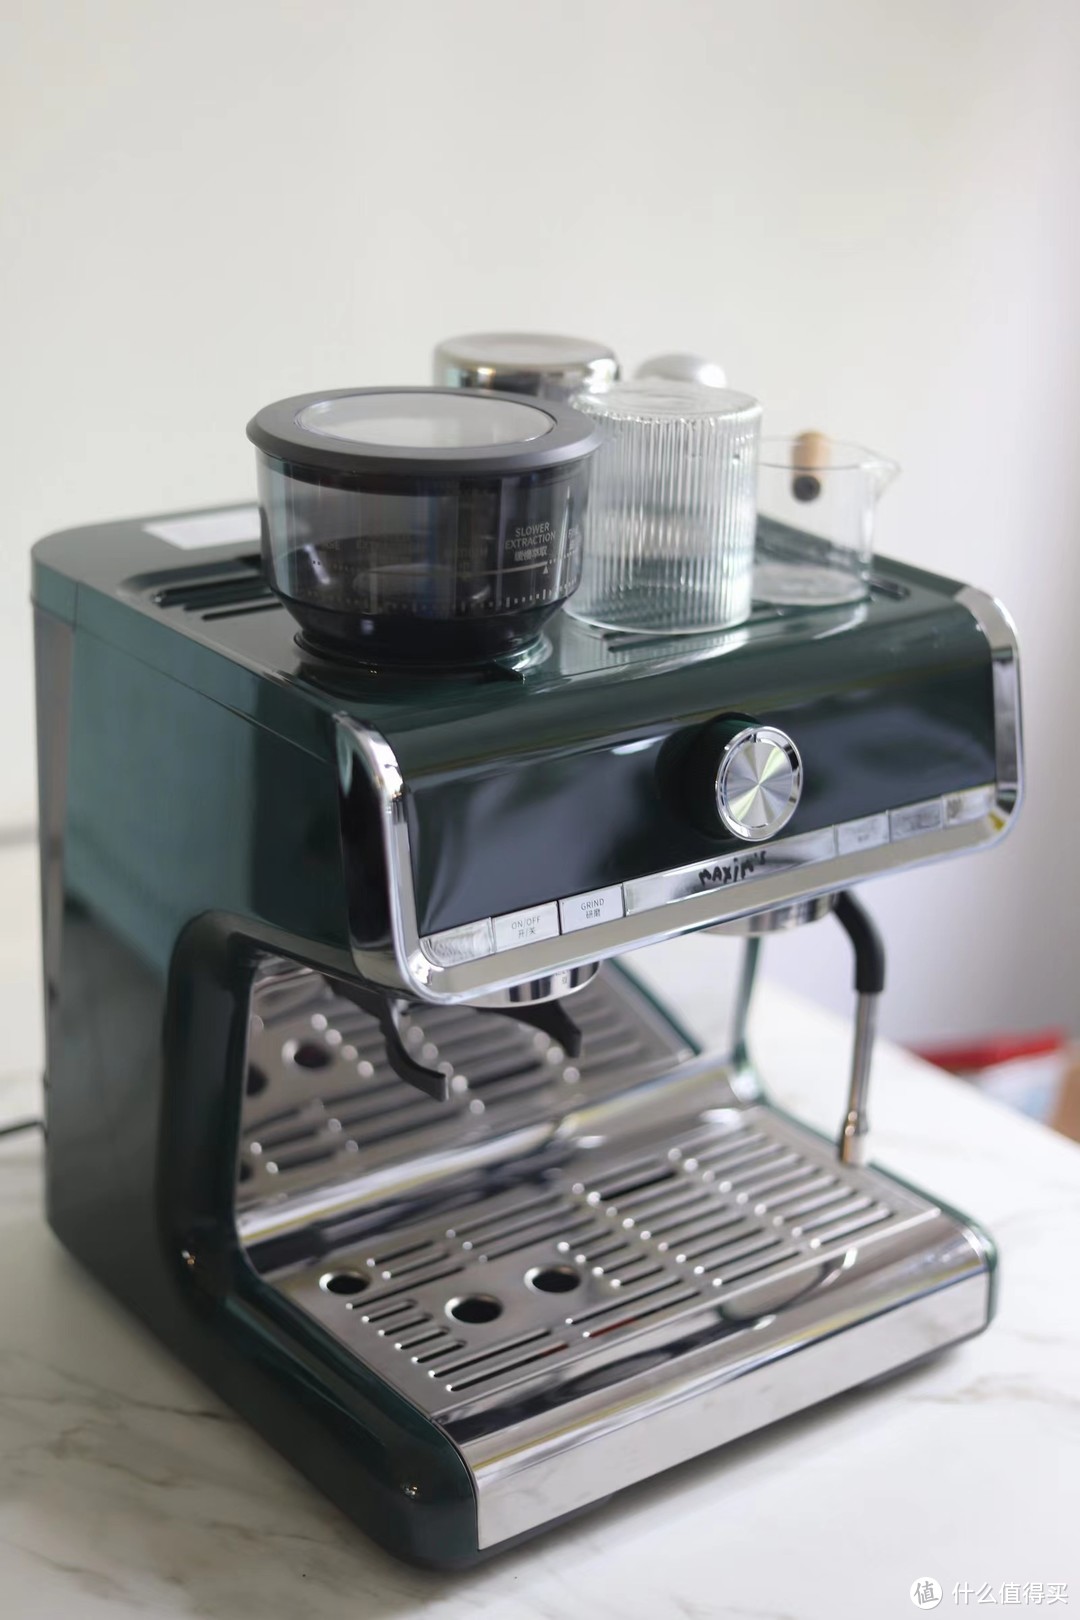 两套半自动咖啡机方案：惠家210S2+MMG磨豆机，马克西姆马赛一体机 | 我的家庭咖啡馆打造之路